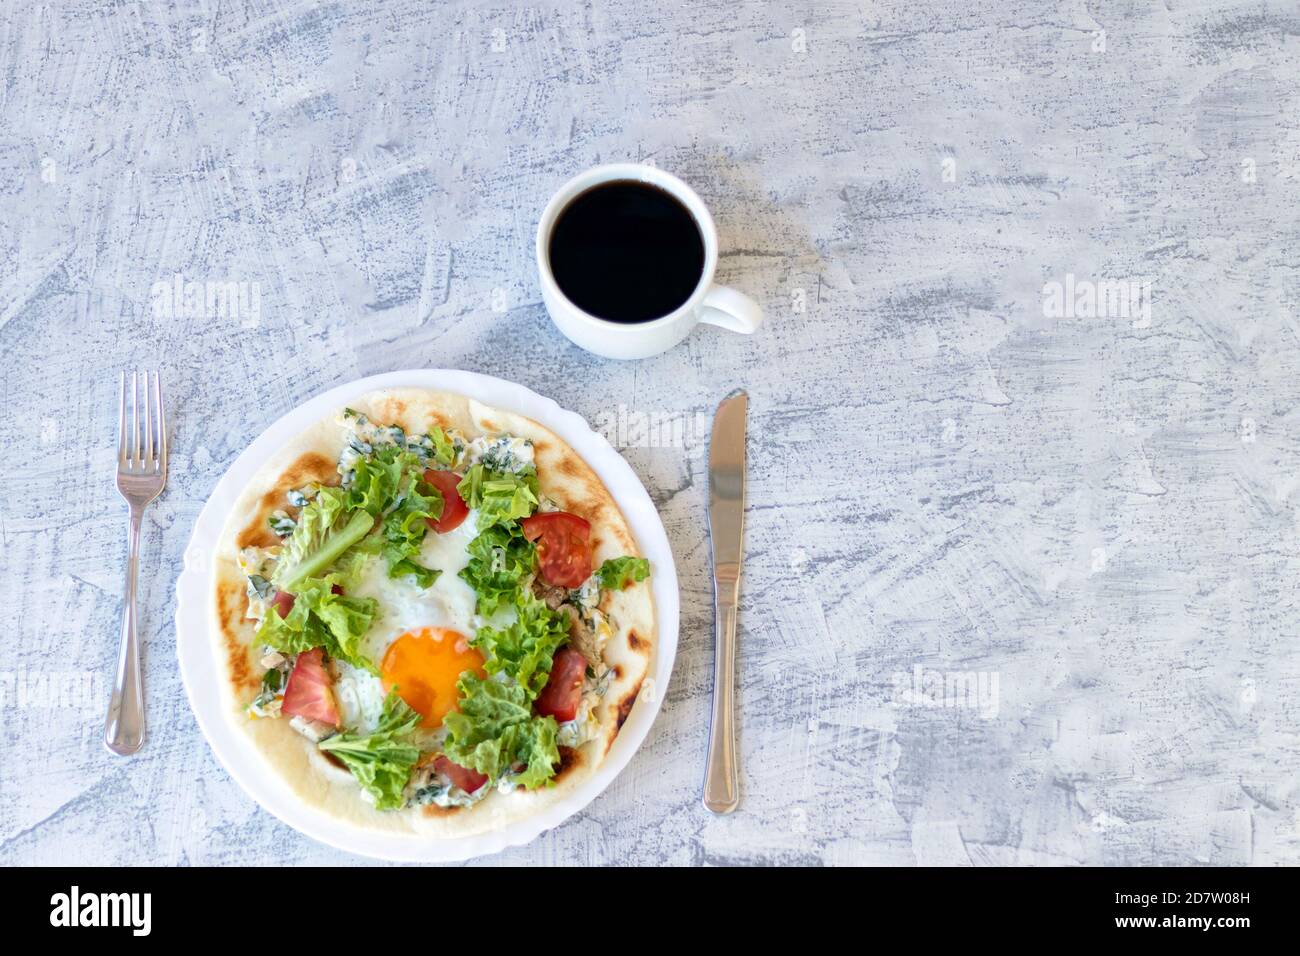 Desayuno italiano con café. Piadina con huevo, tomate y ensalada. Delicioso desayuno servido en mesa texturizada. Vista superior. Enfoque suave Foto de stock